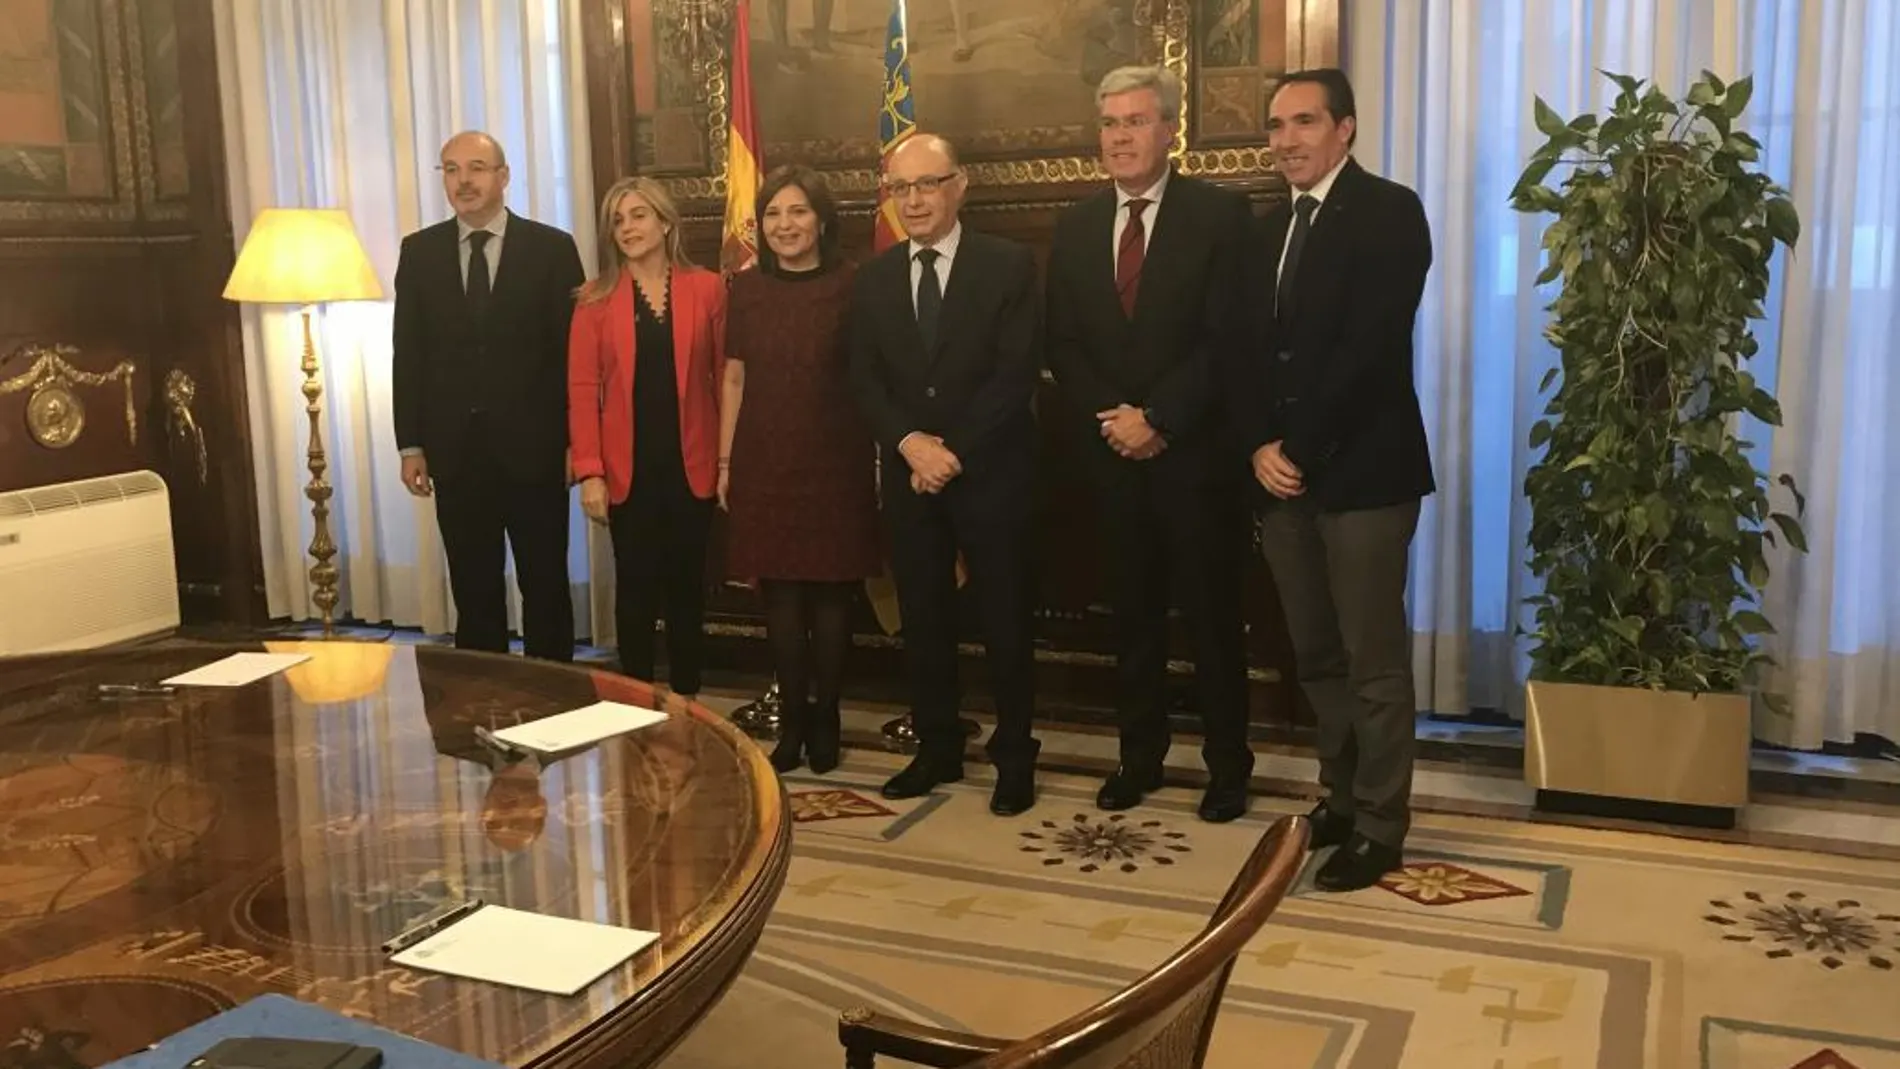 El ministro Montoro recibió a la presidenta del PPCV, Isabel Bonig, que acudió acompañada del concejal de Valencia Eusebio Monzó y los diputados Eva Ortiz y Rubén Ibañez